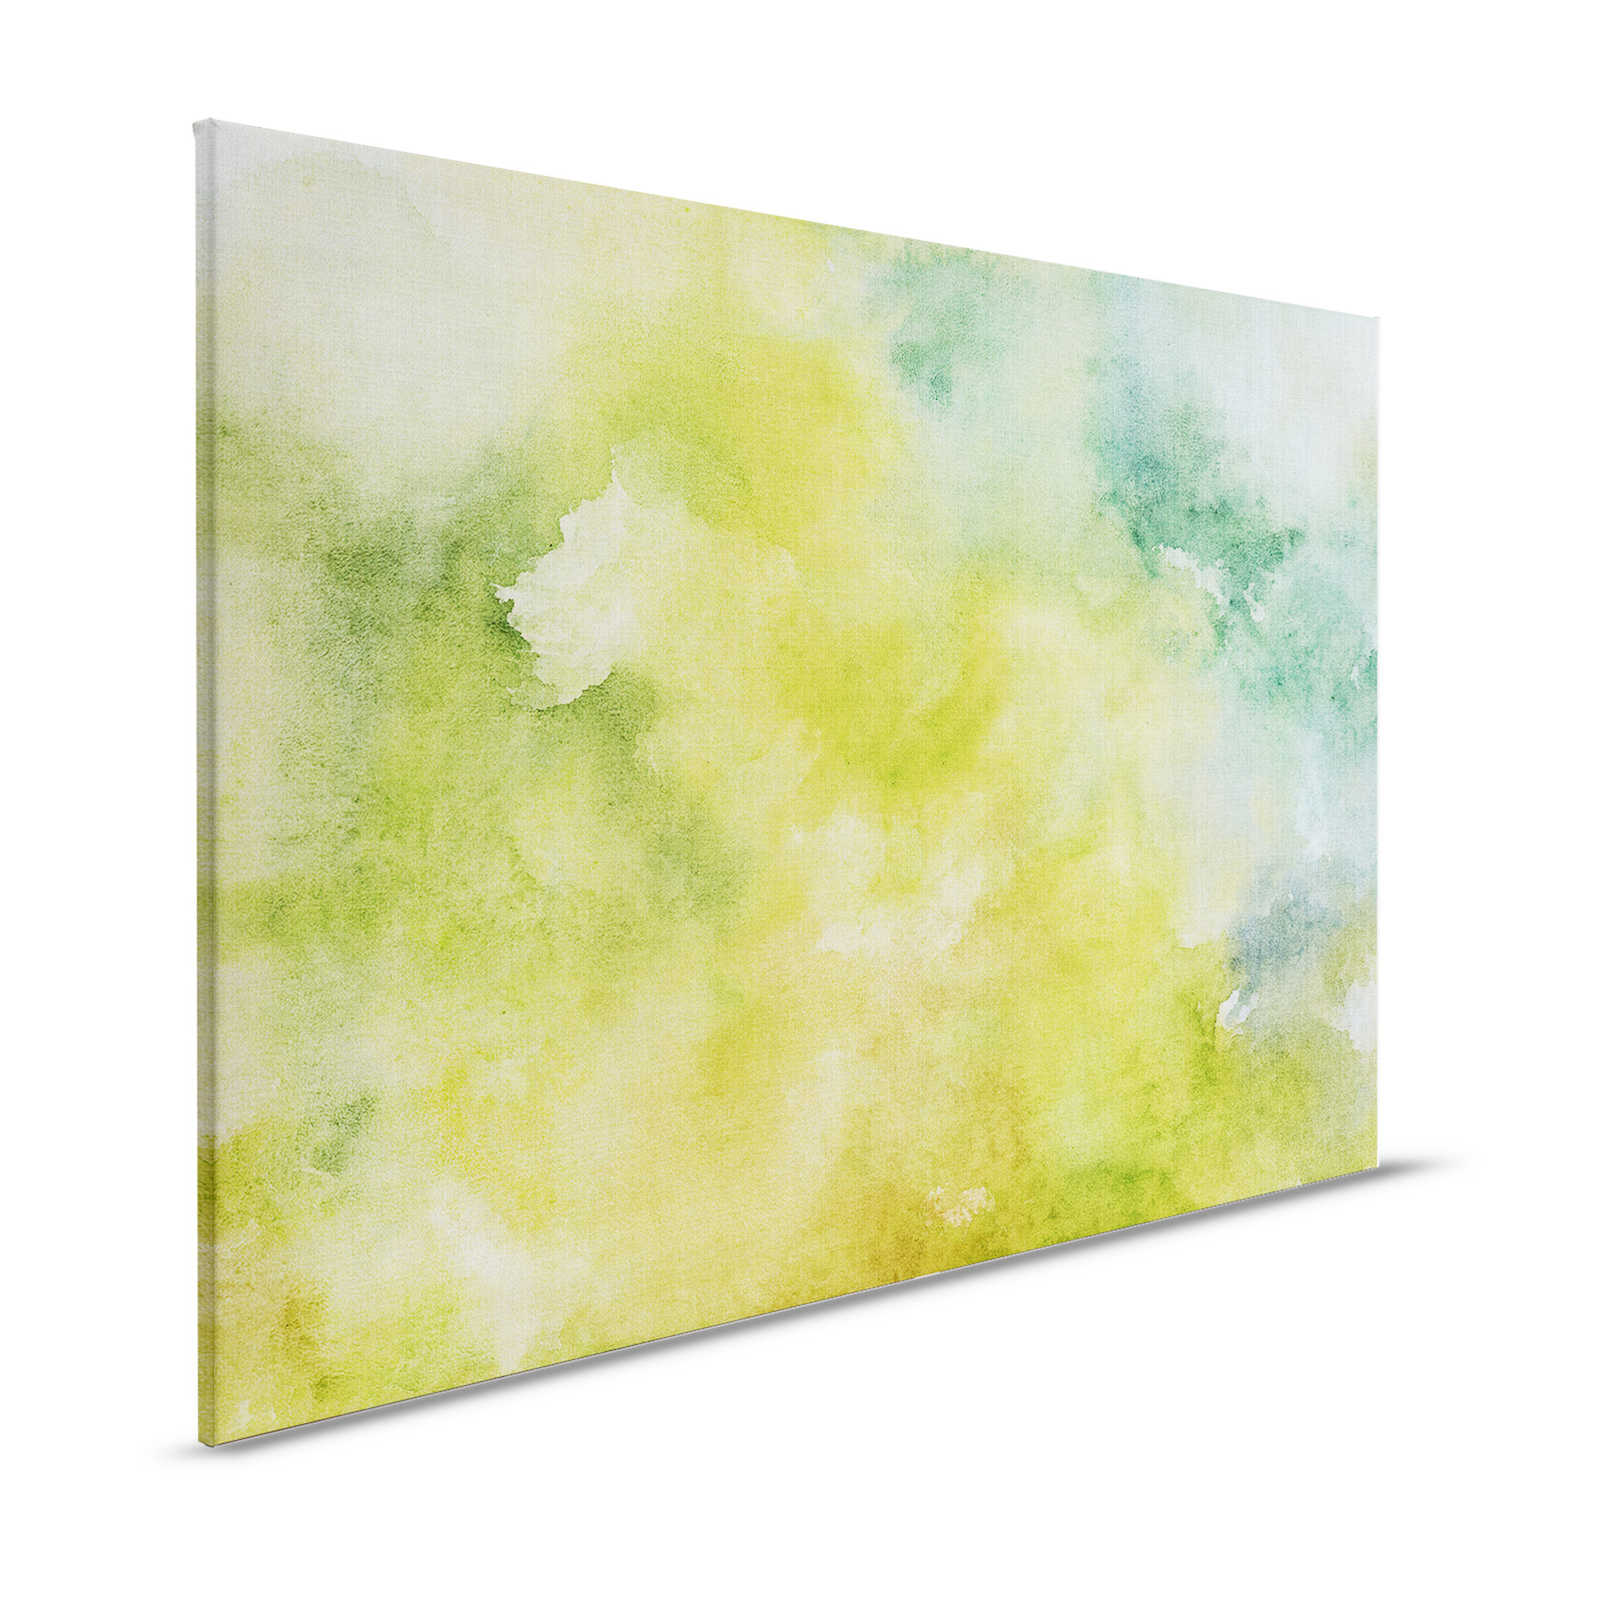 Acuarelas 3 - Motivo de acuarela verde como cuadro en lienzo con aspecto de lino natural - 1,20 m x 0,80 m
